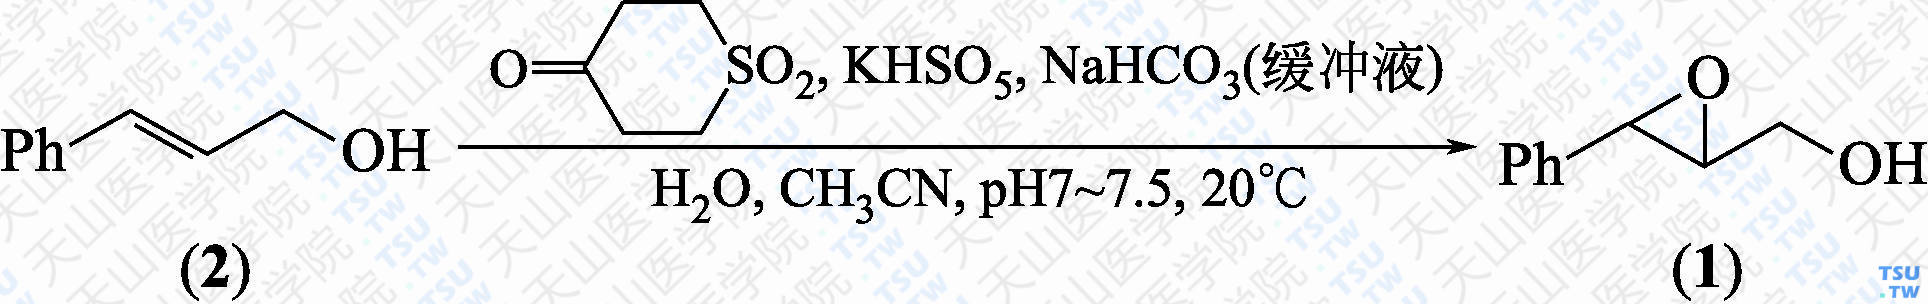 2，3-环氧-3-苯基-1-丙醇（分子式：C<sub>9</sub>H<sub>10</sub>O<sub>2</sub>）的合成方法路线及其结构式